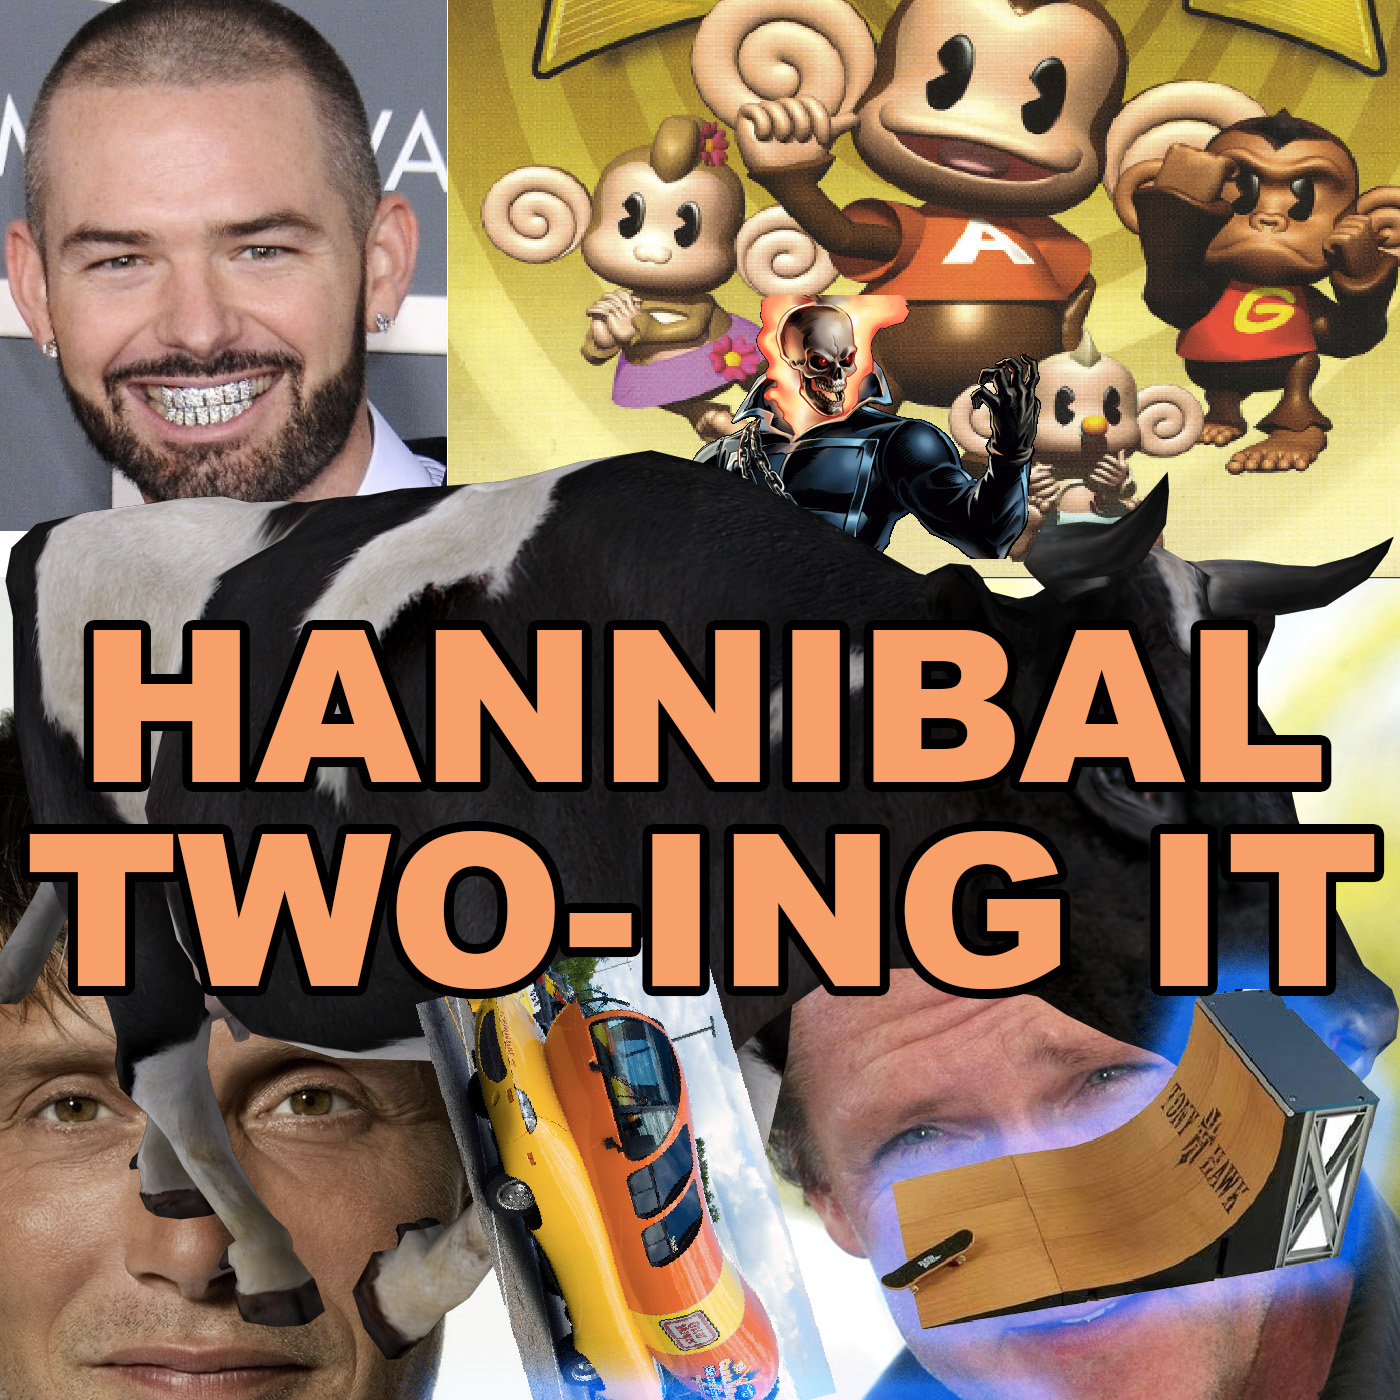 Podburglars: Hannibal Two-ing It